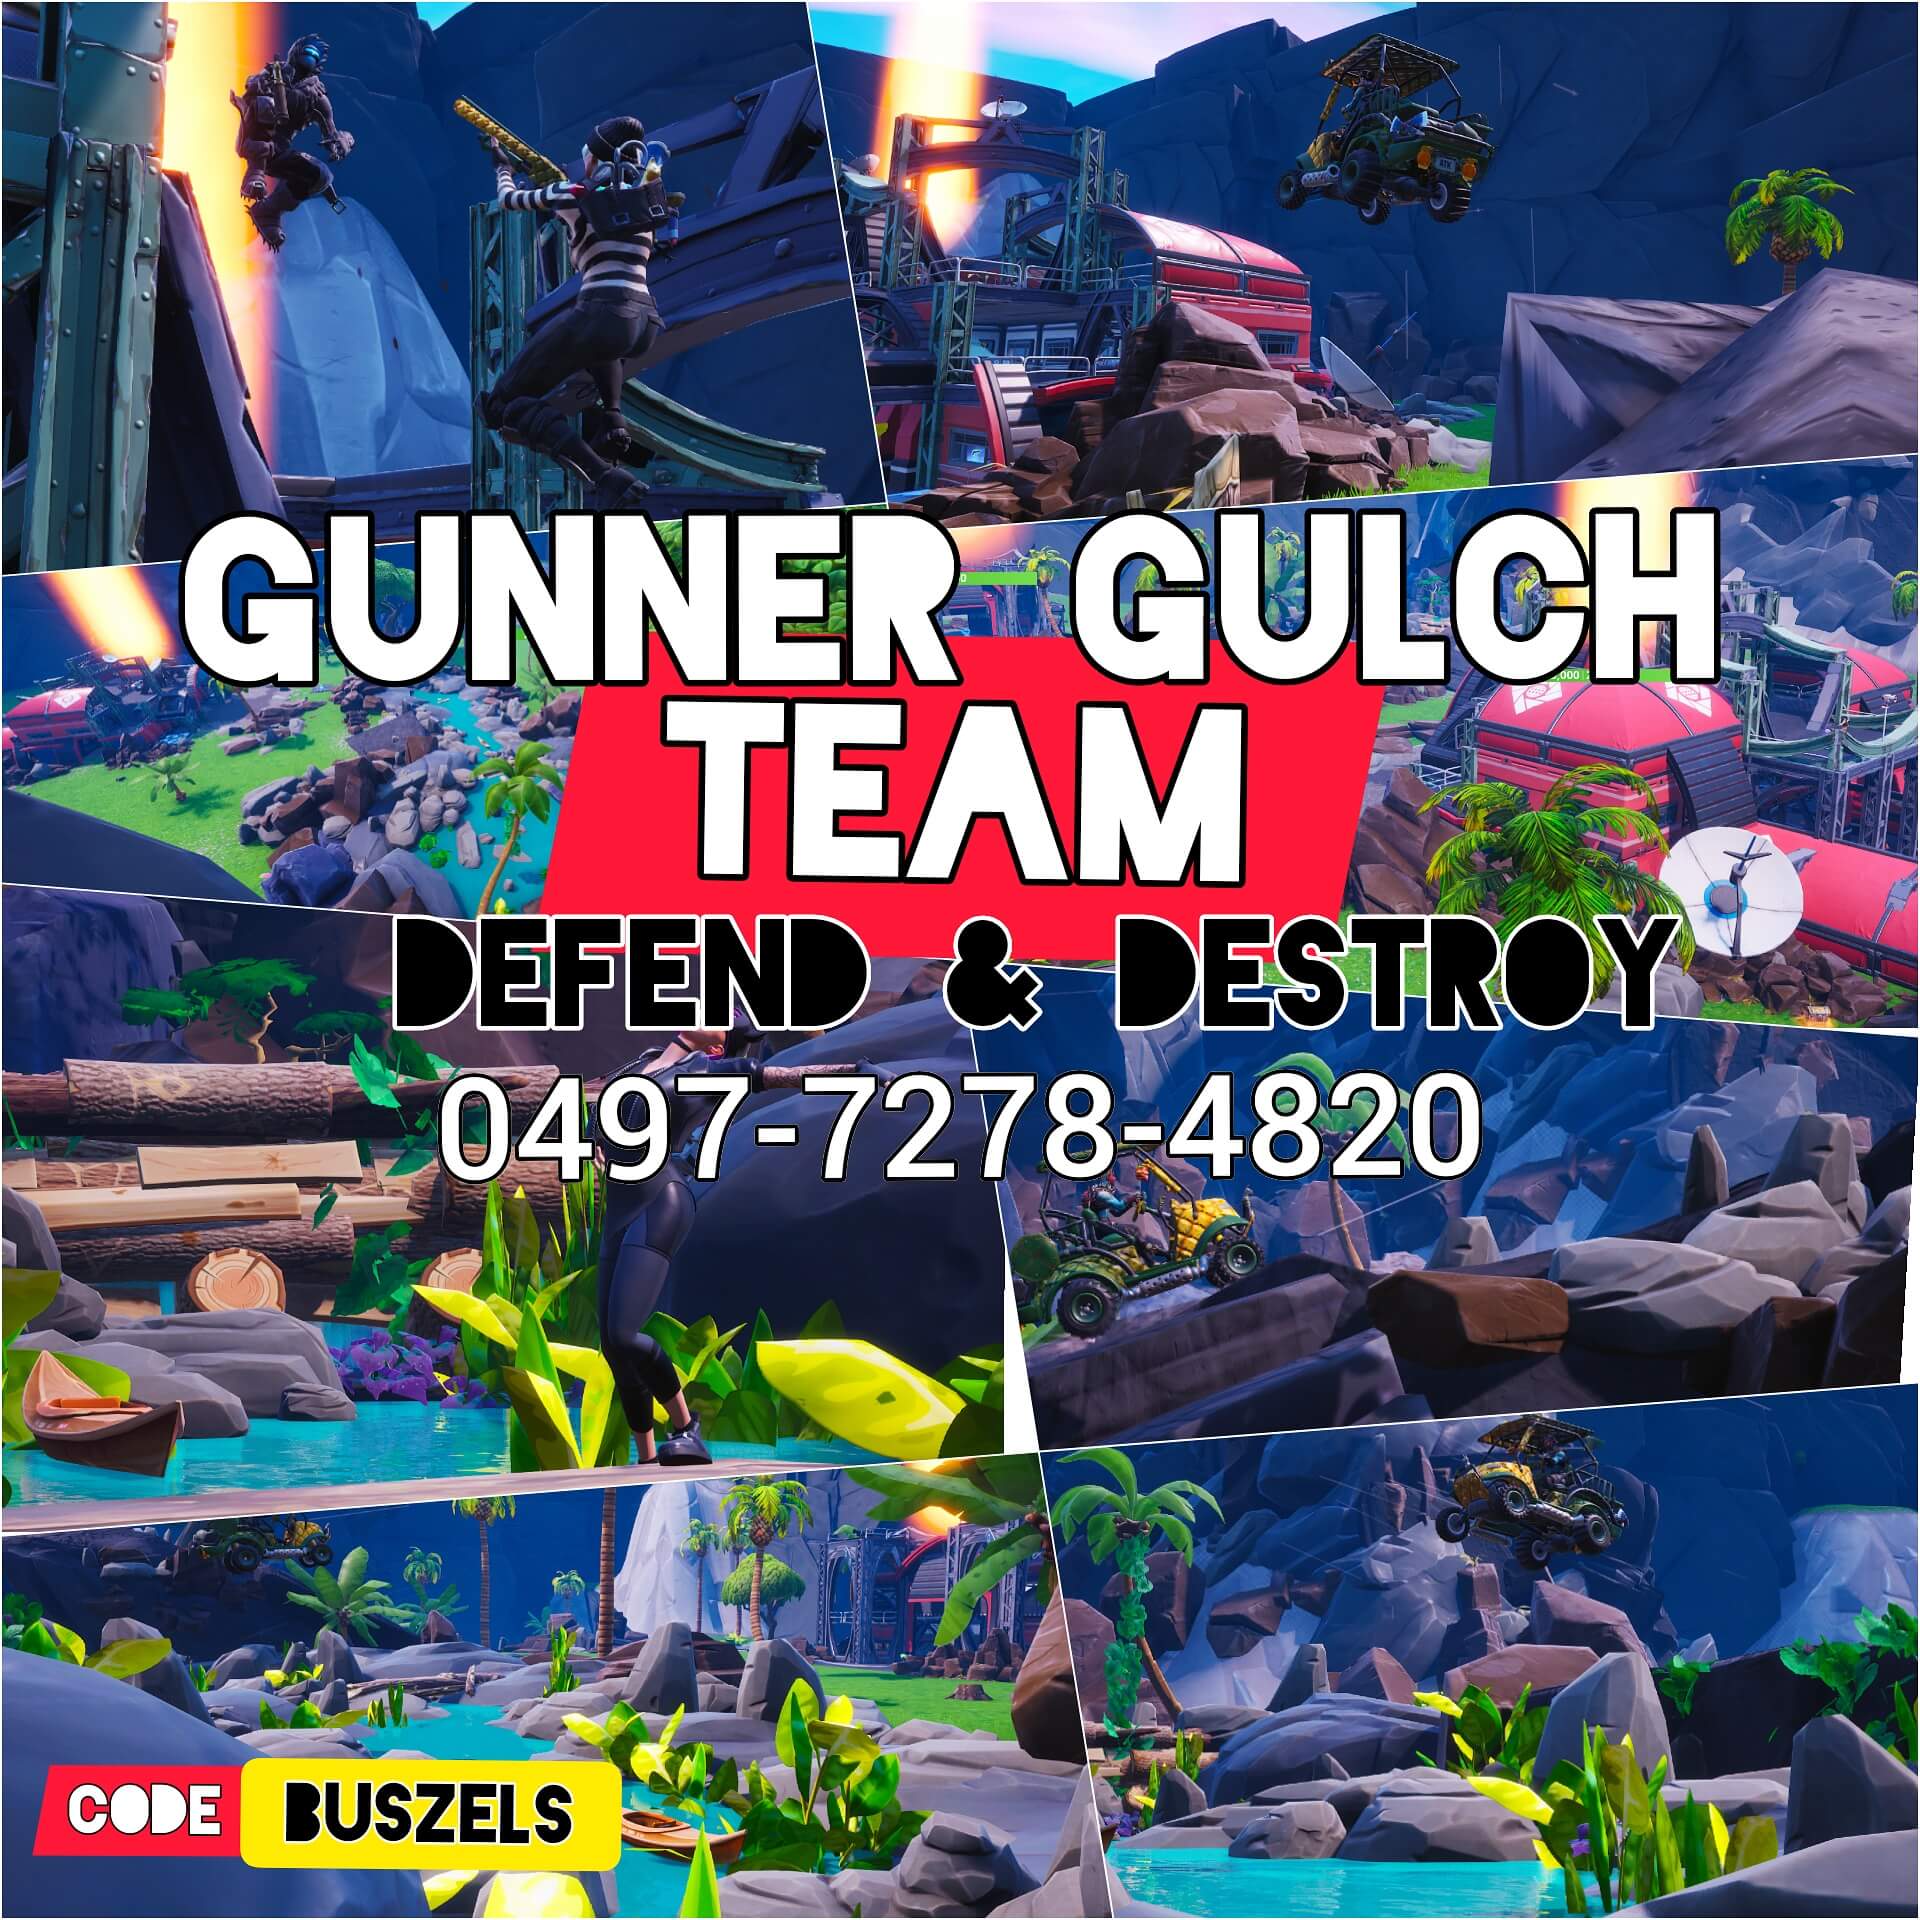 GUNNER GULCH : TEAM DEFEND & DESTROY